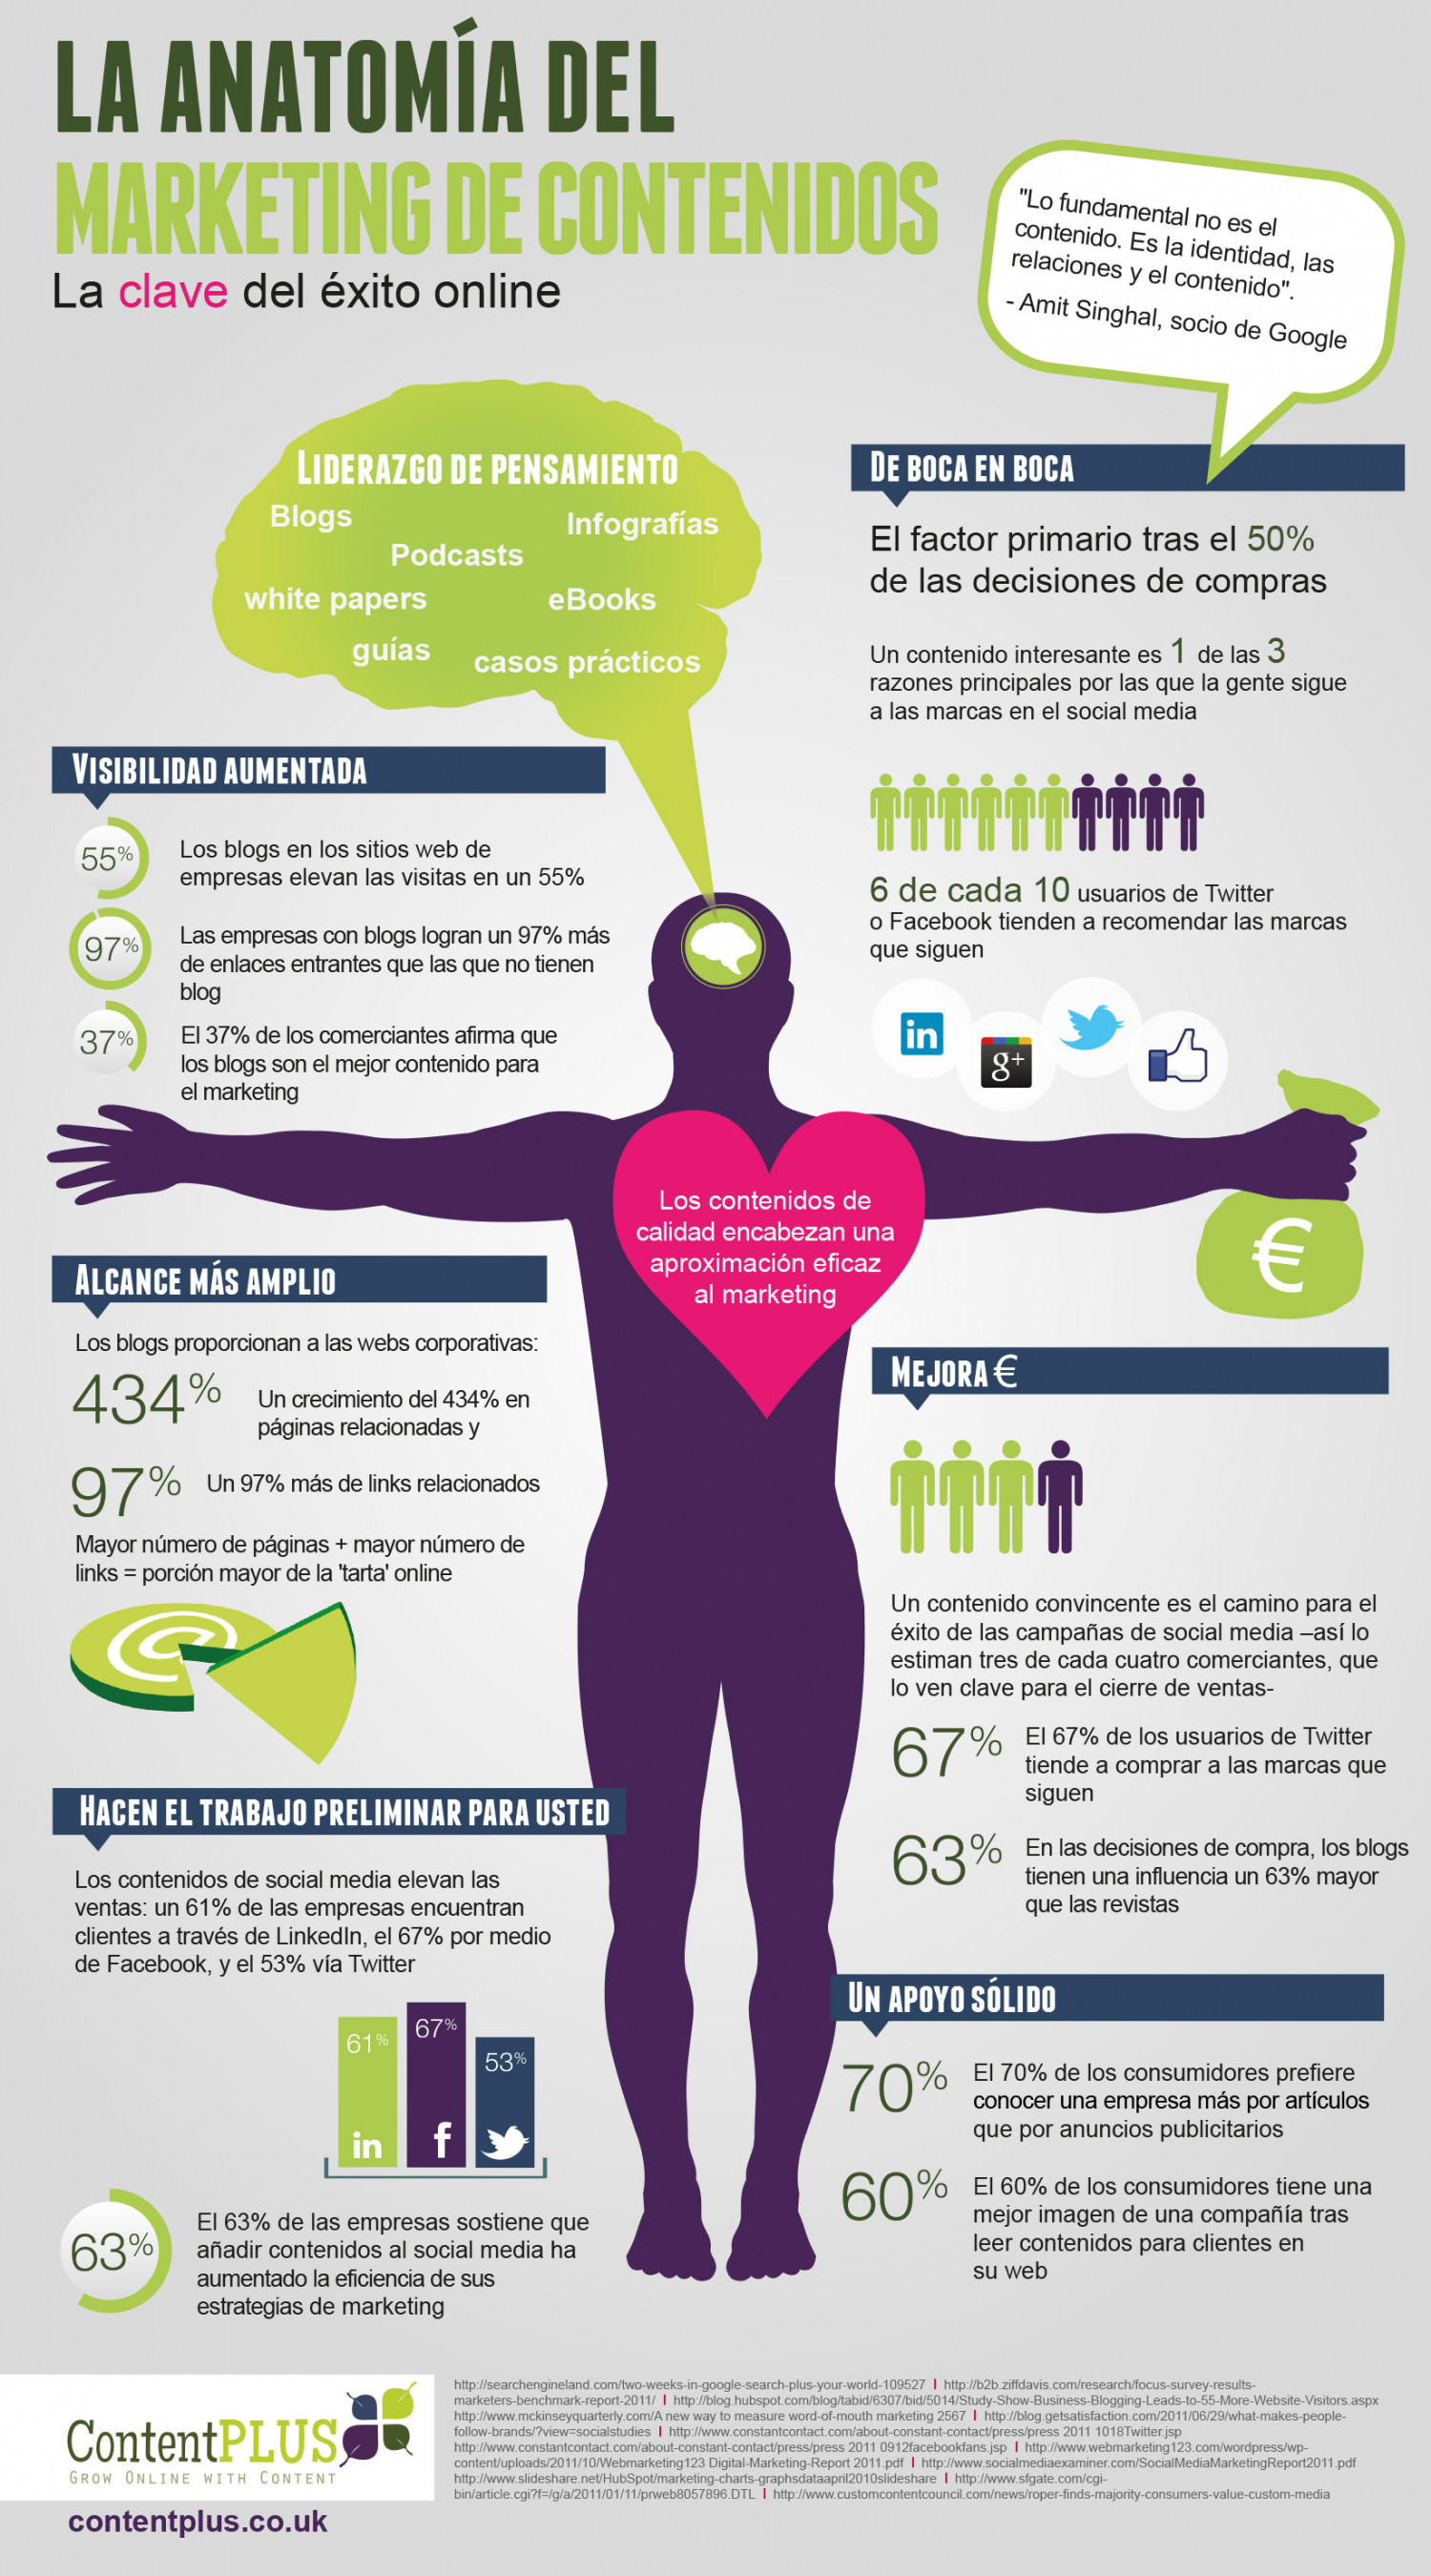 La Anatomia del Marketing de Contenidos Infographic